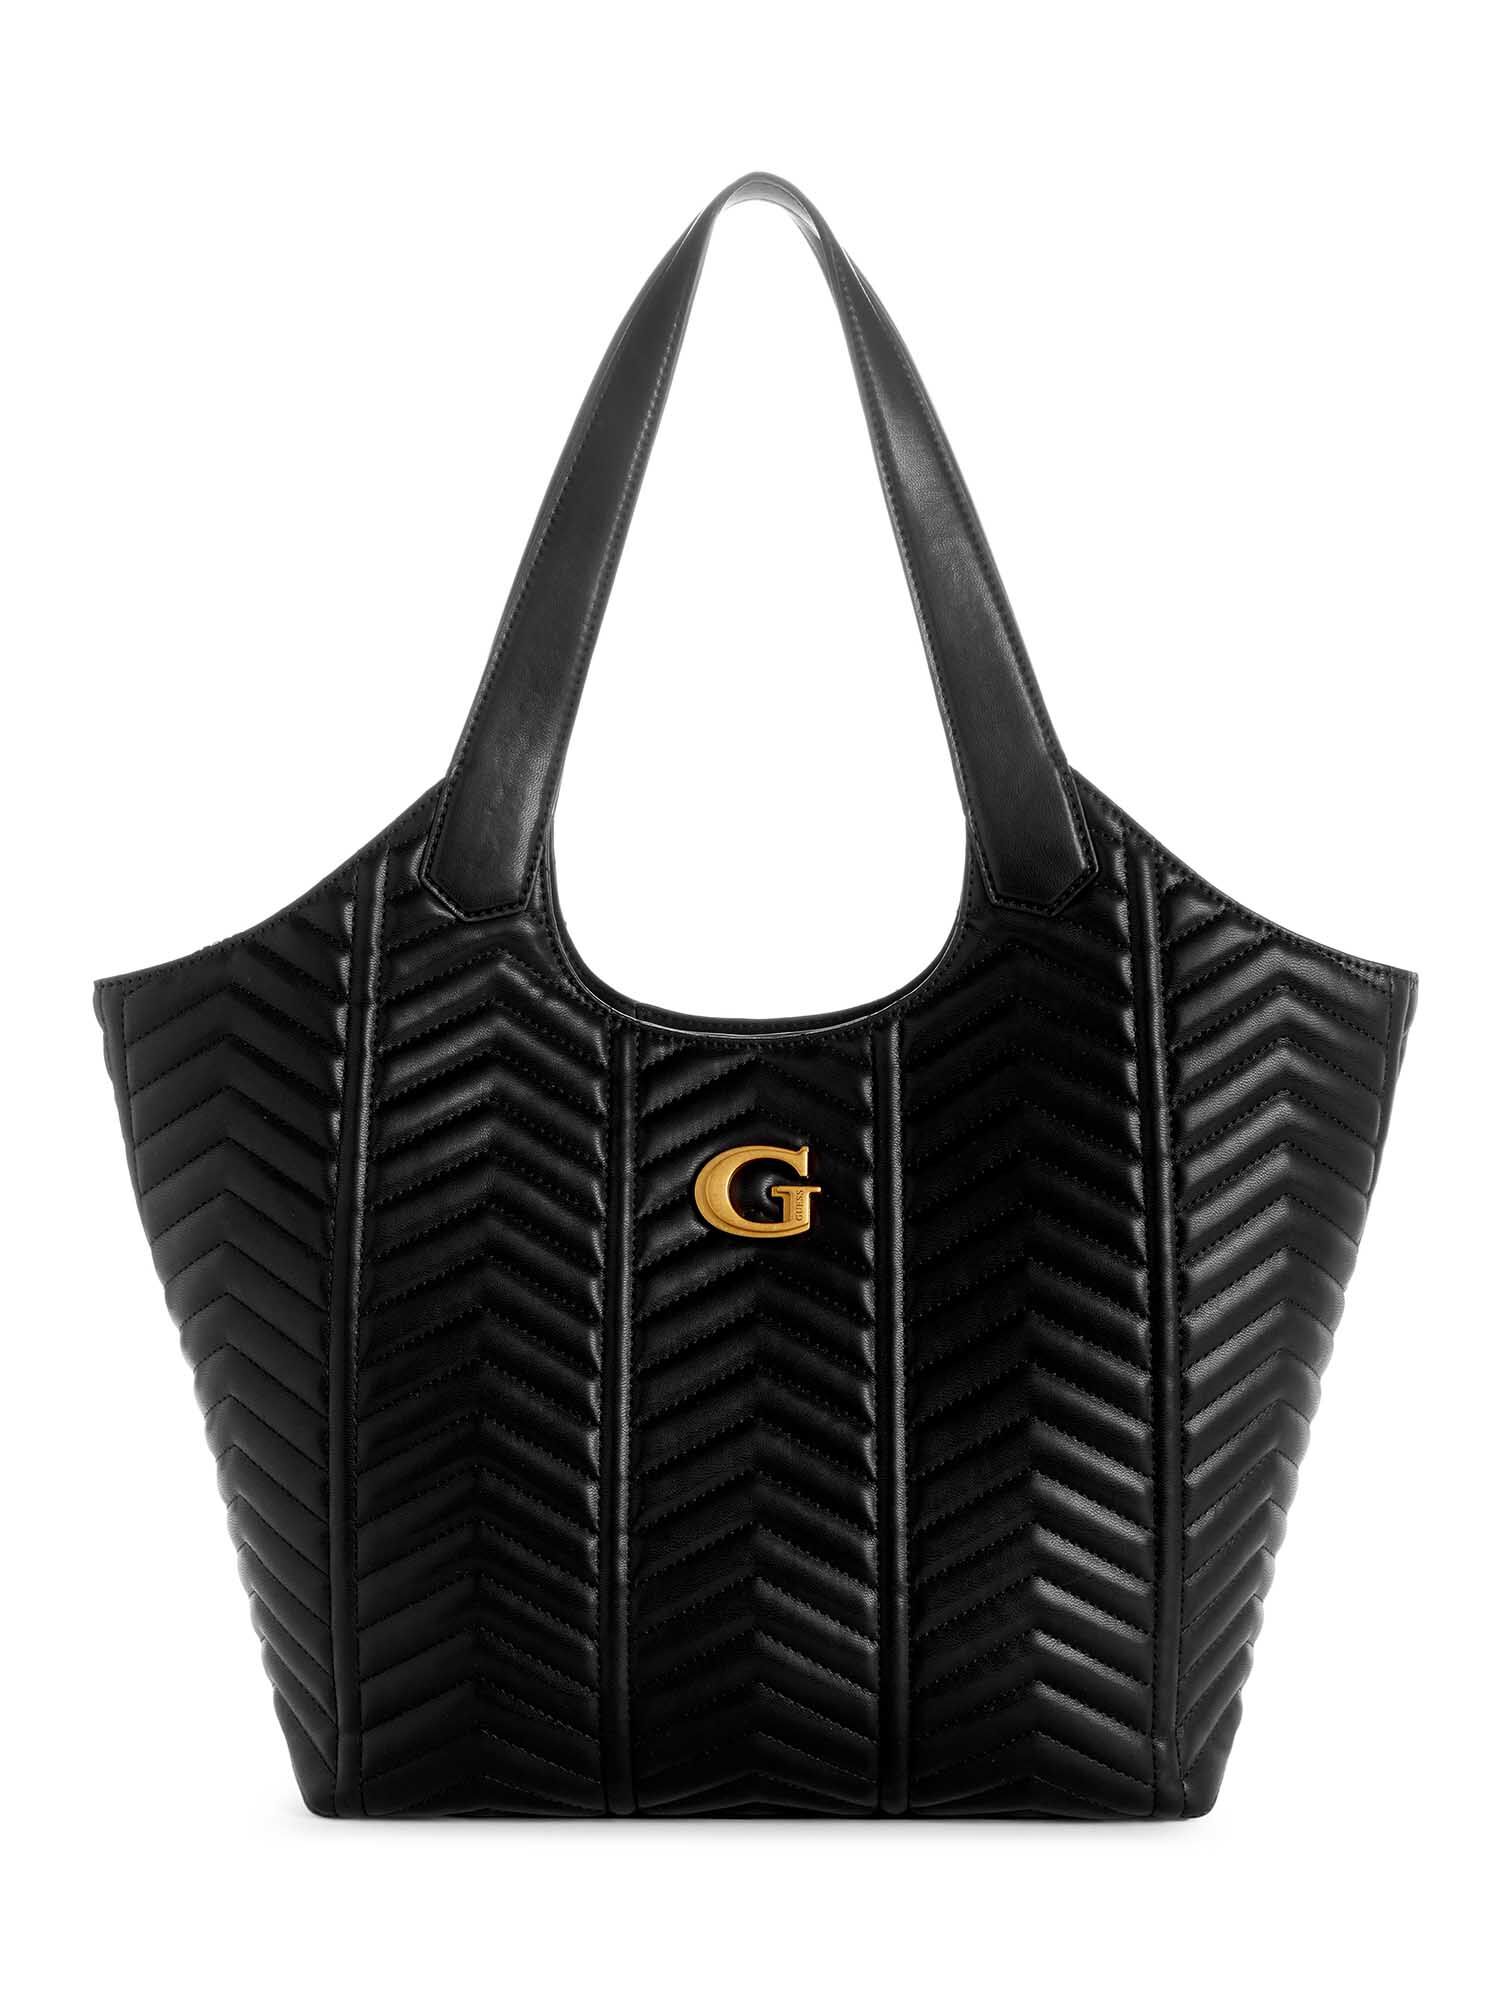 GUESS Plastic Shoulder Bags for Women | Mercari